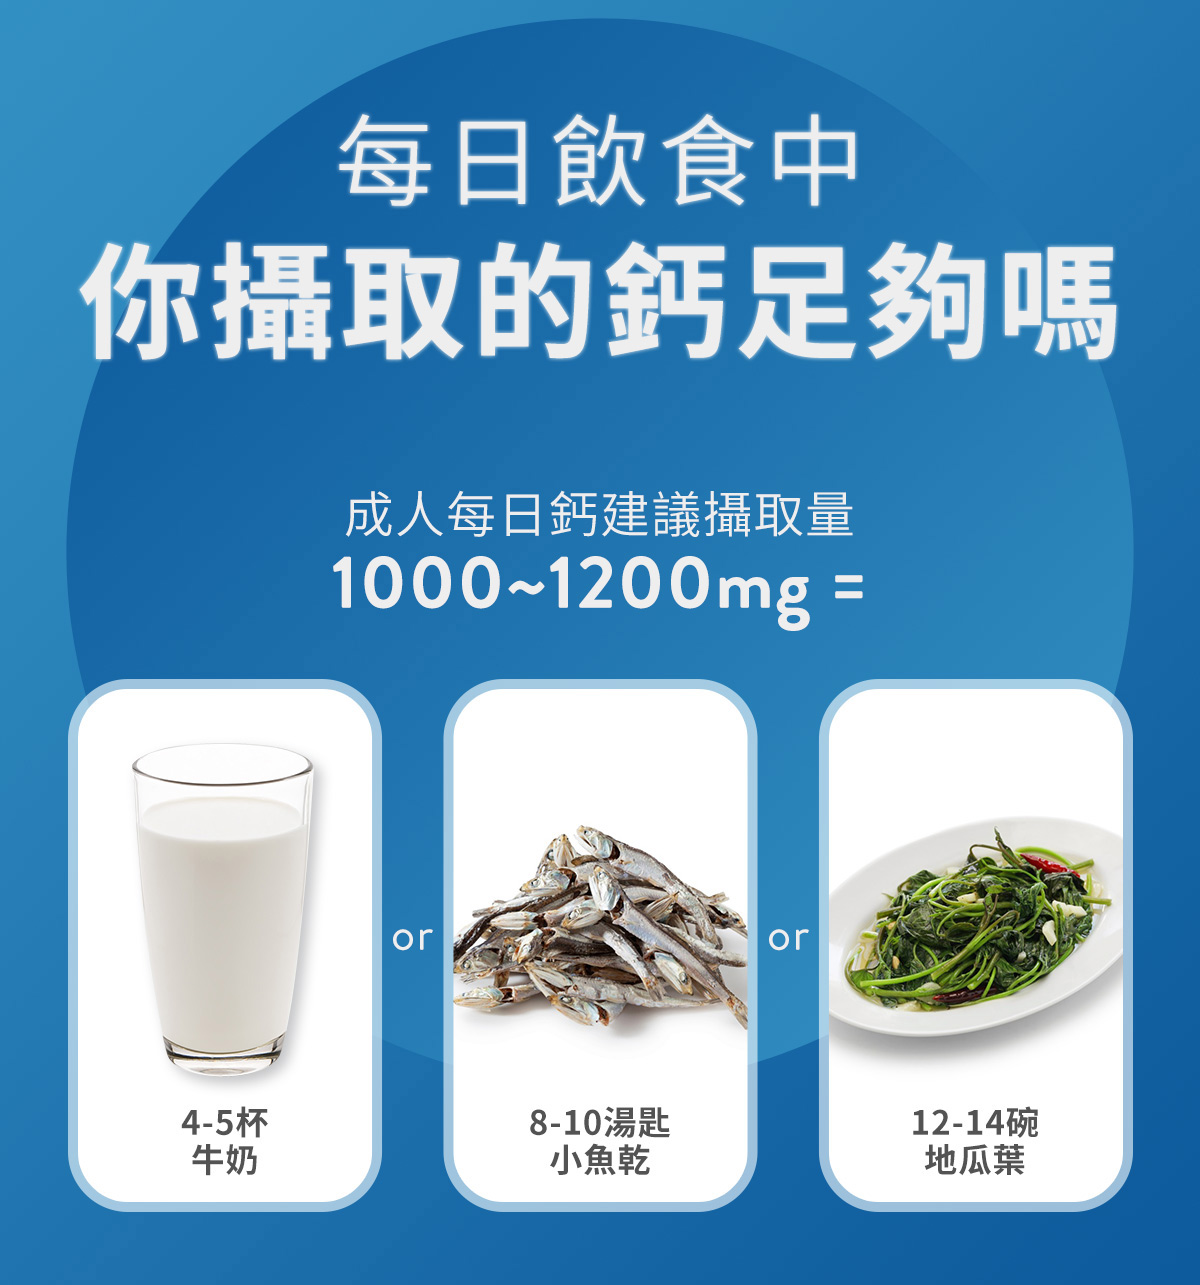 成人每日鈣建議攝取量1000-1200mg =4-5杯牛奶、8-10湯匙小魚乾、12-14碗地瓜葉